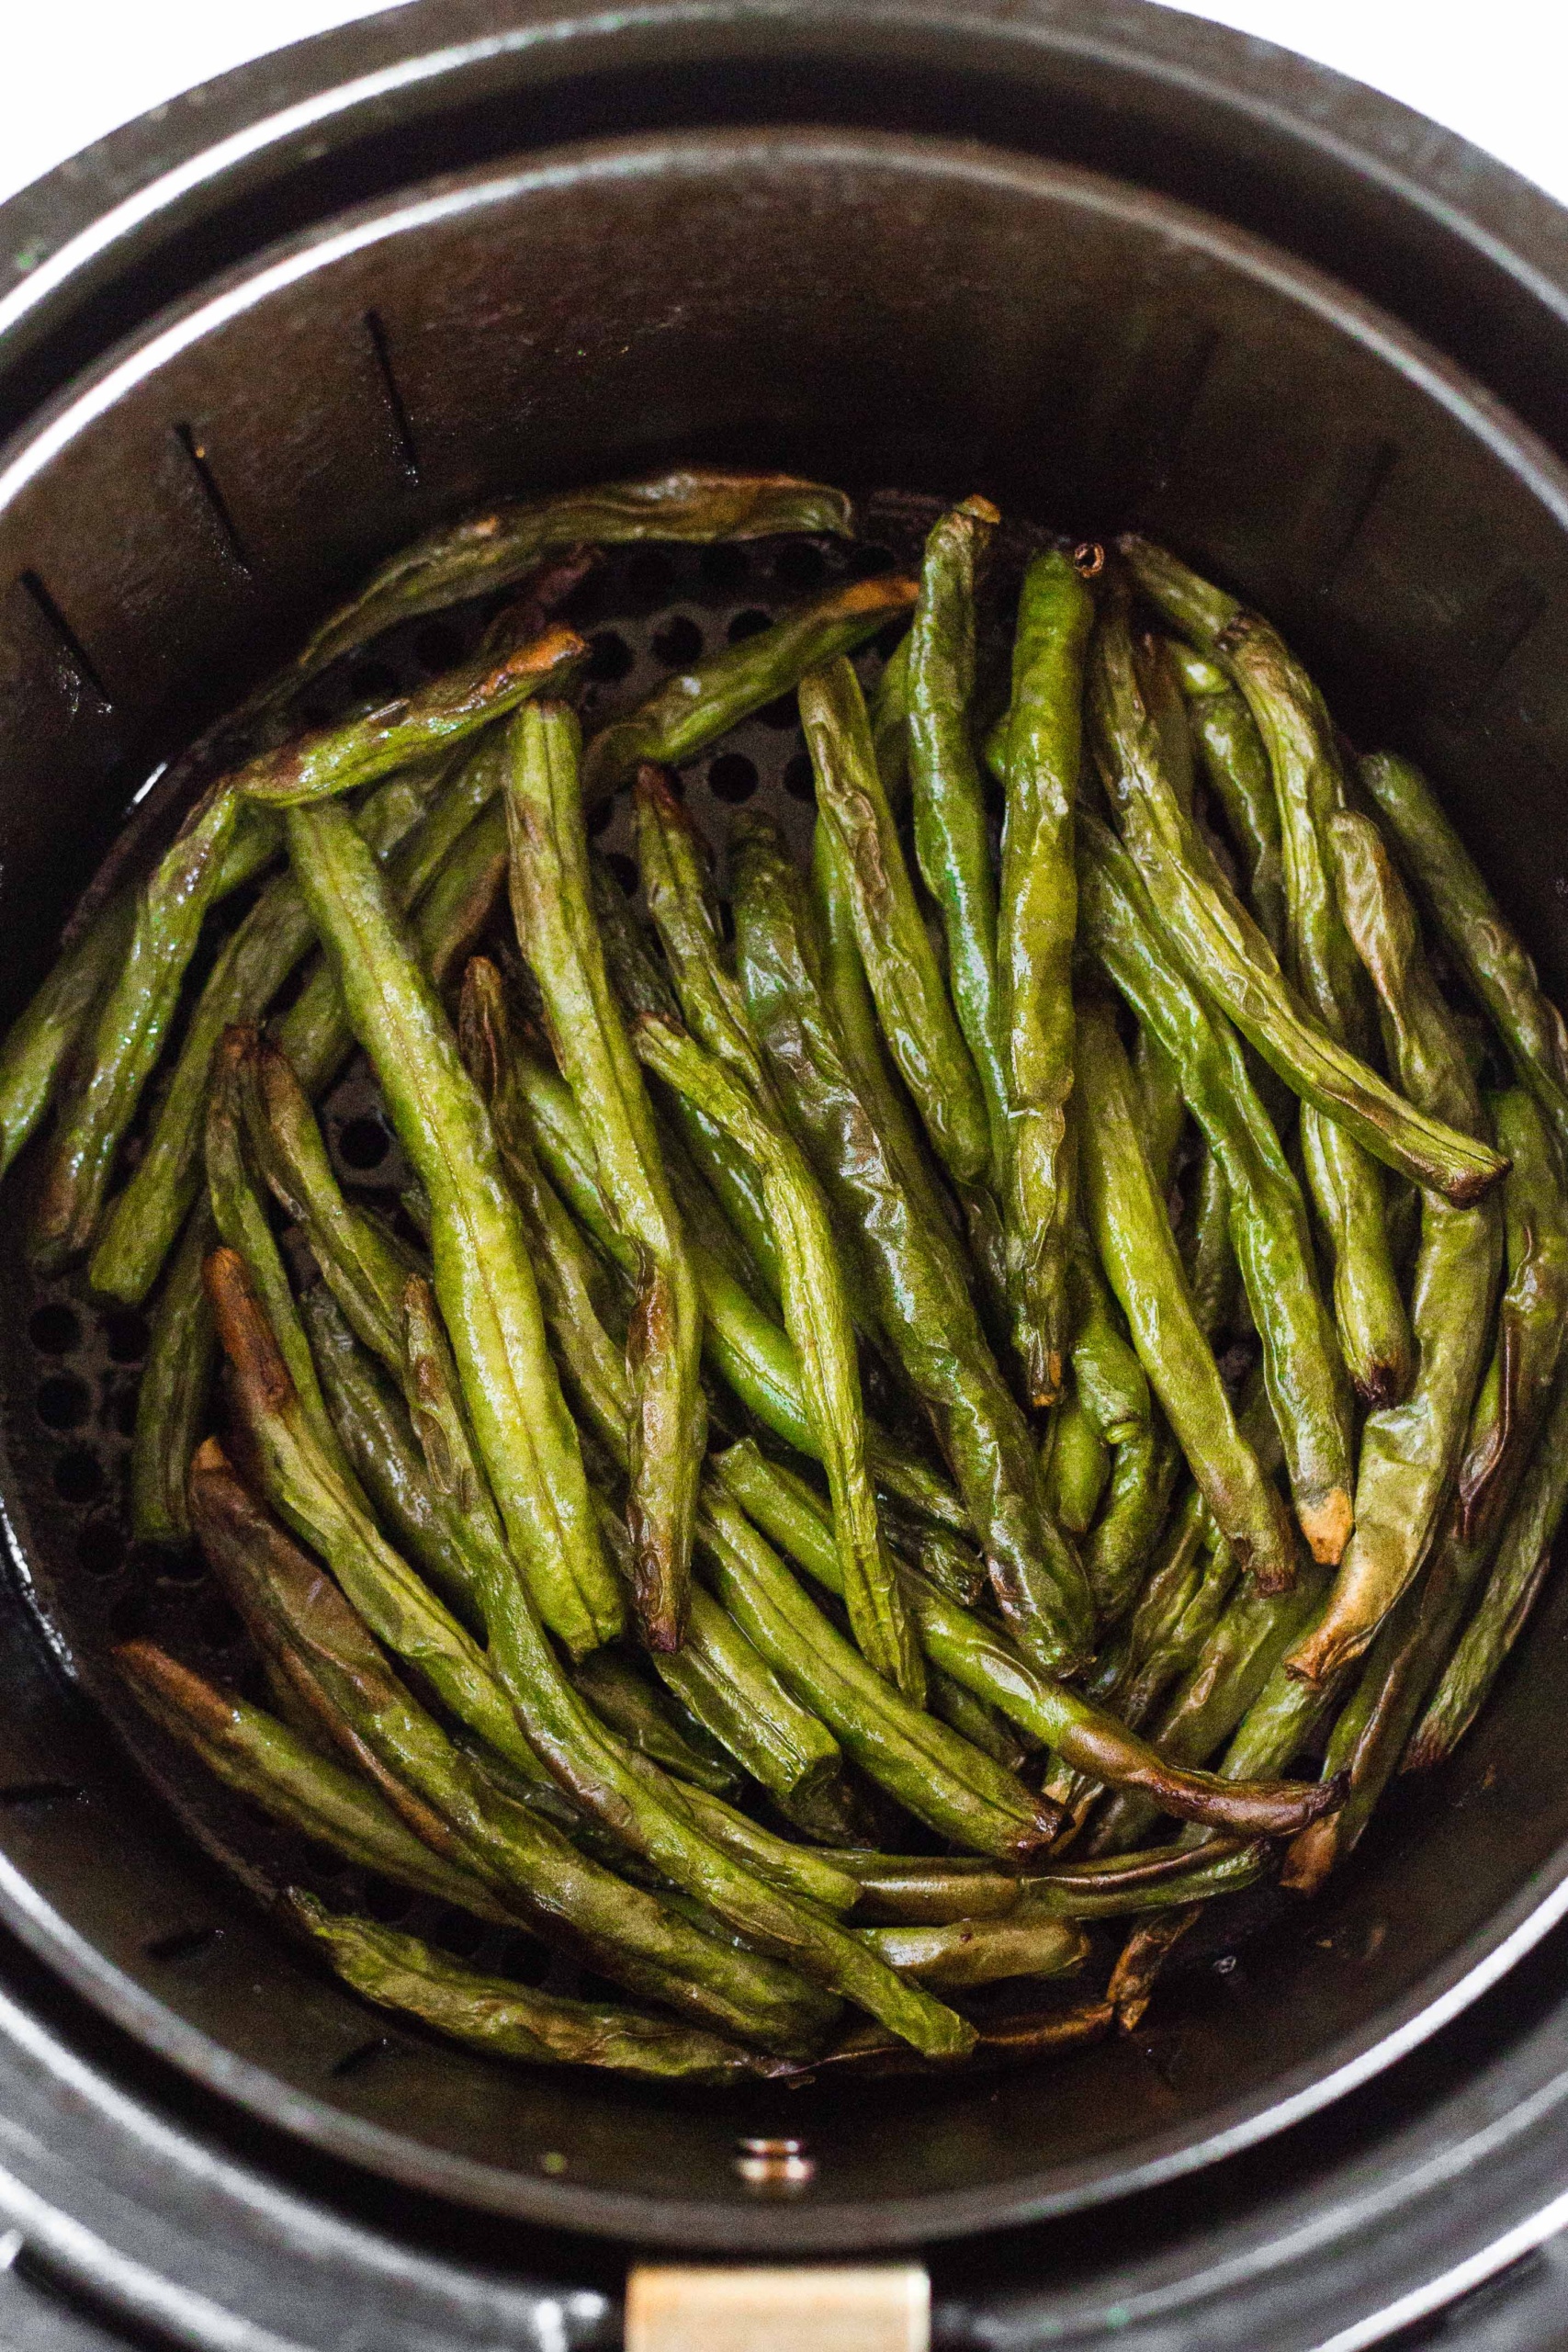 Gluten-free green beans in an air fryer basket.